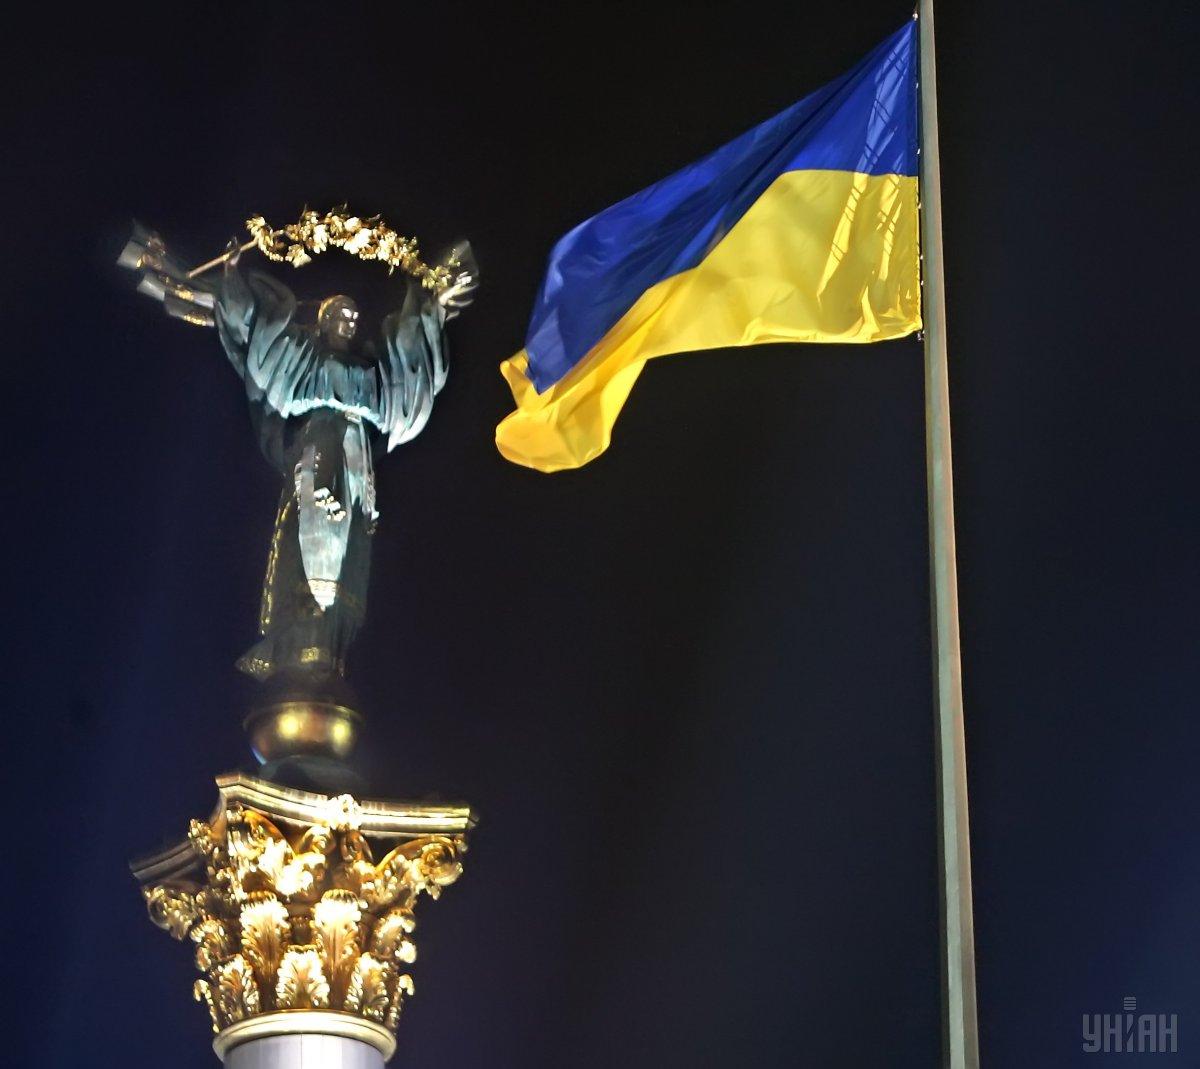 День гідності і свободи в Україні